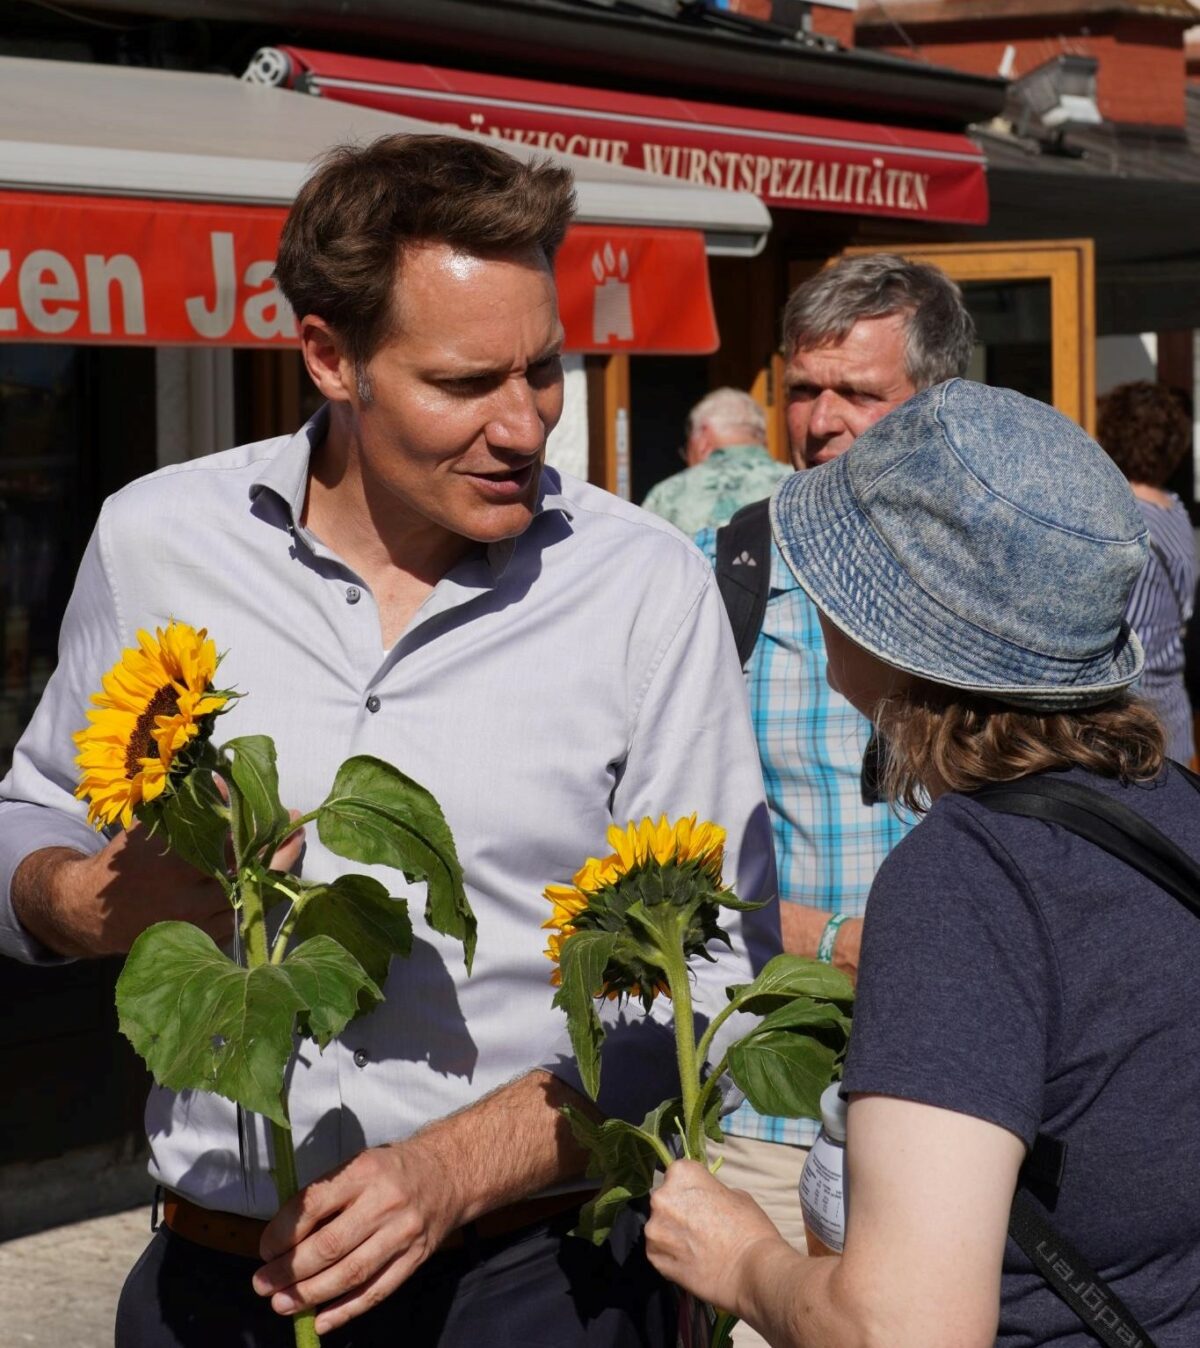 Ein Bild von Ludwig Hartmann mit einer Sonnenblume in der Hand, wie er mit einer Frau redet